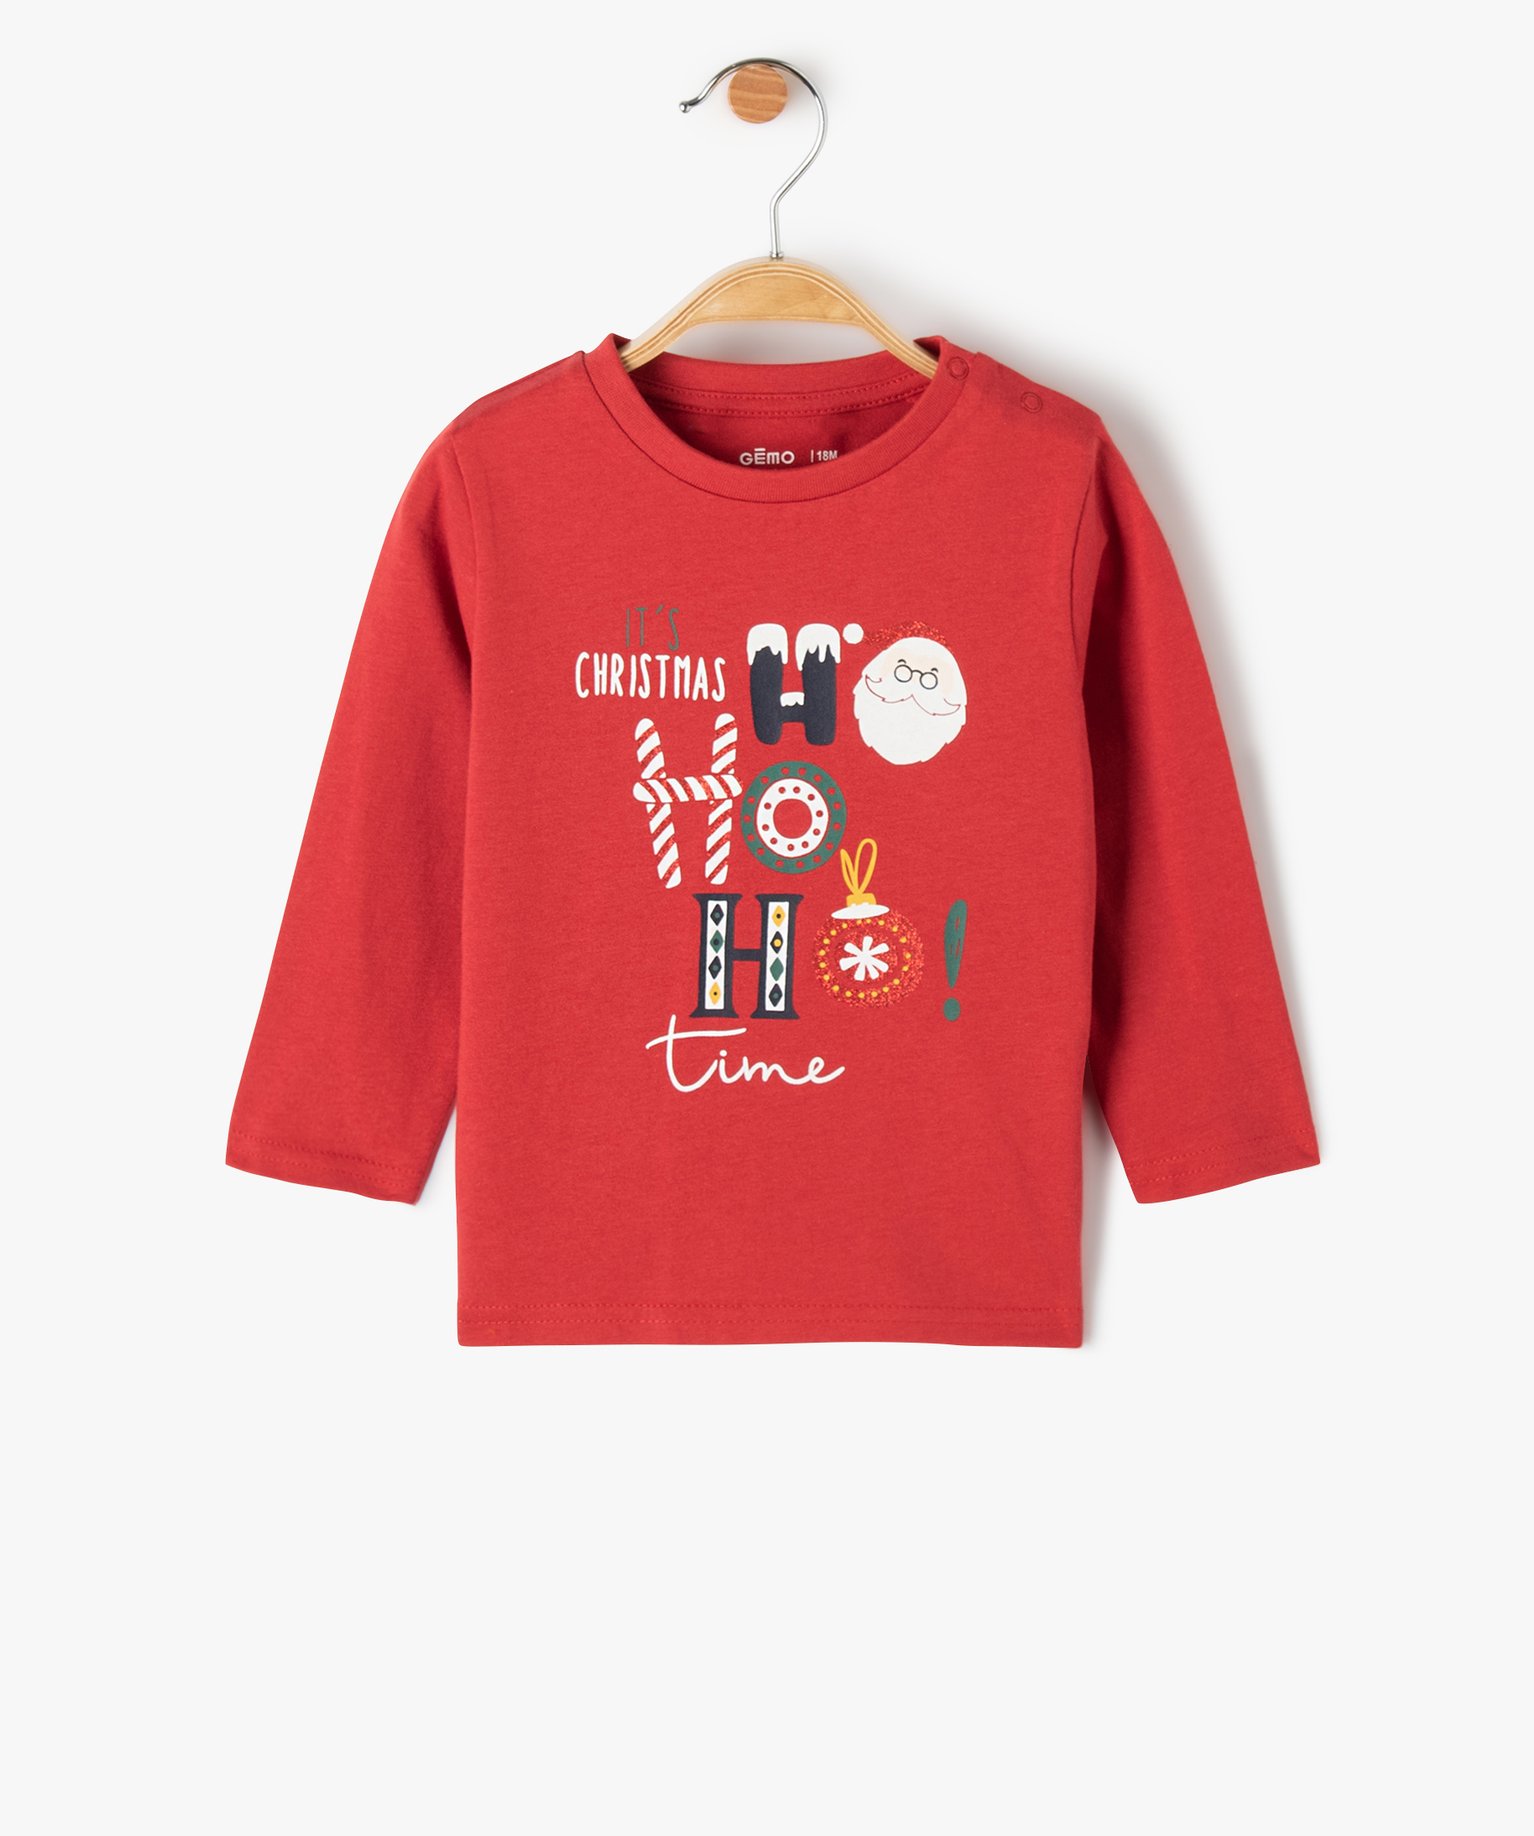 Tee-shirt bébé à manches longues avec motifs de Noël - 3M - rouge - GEMO